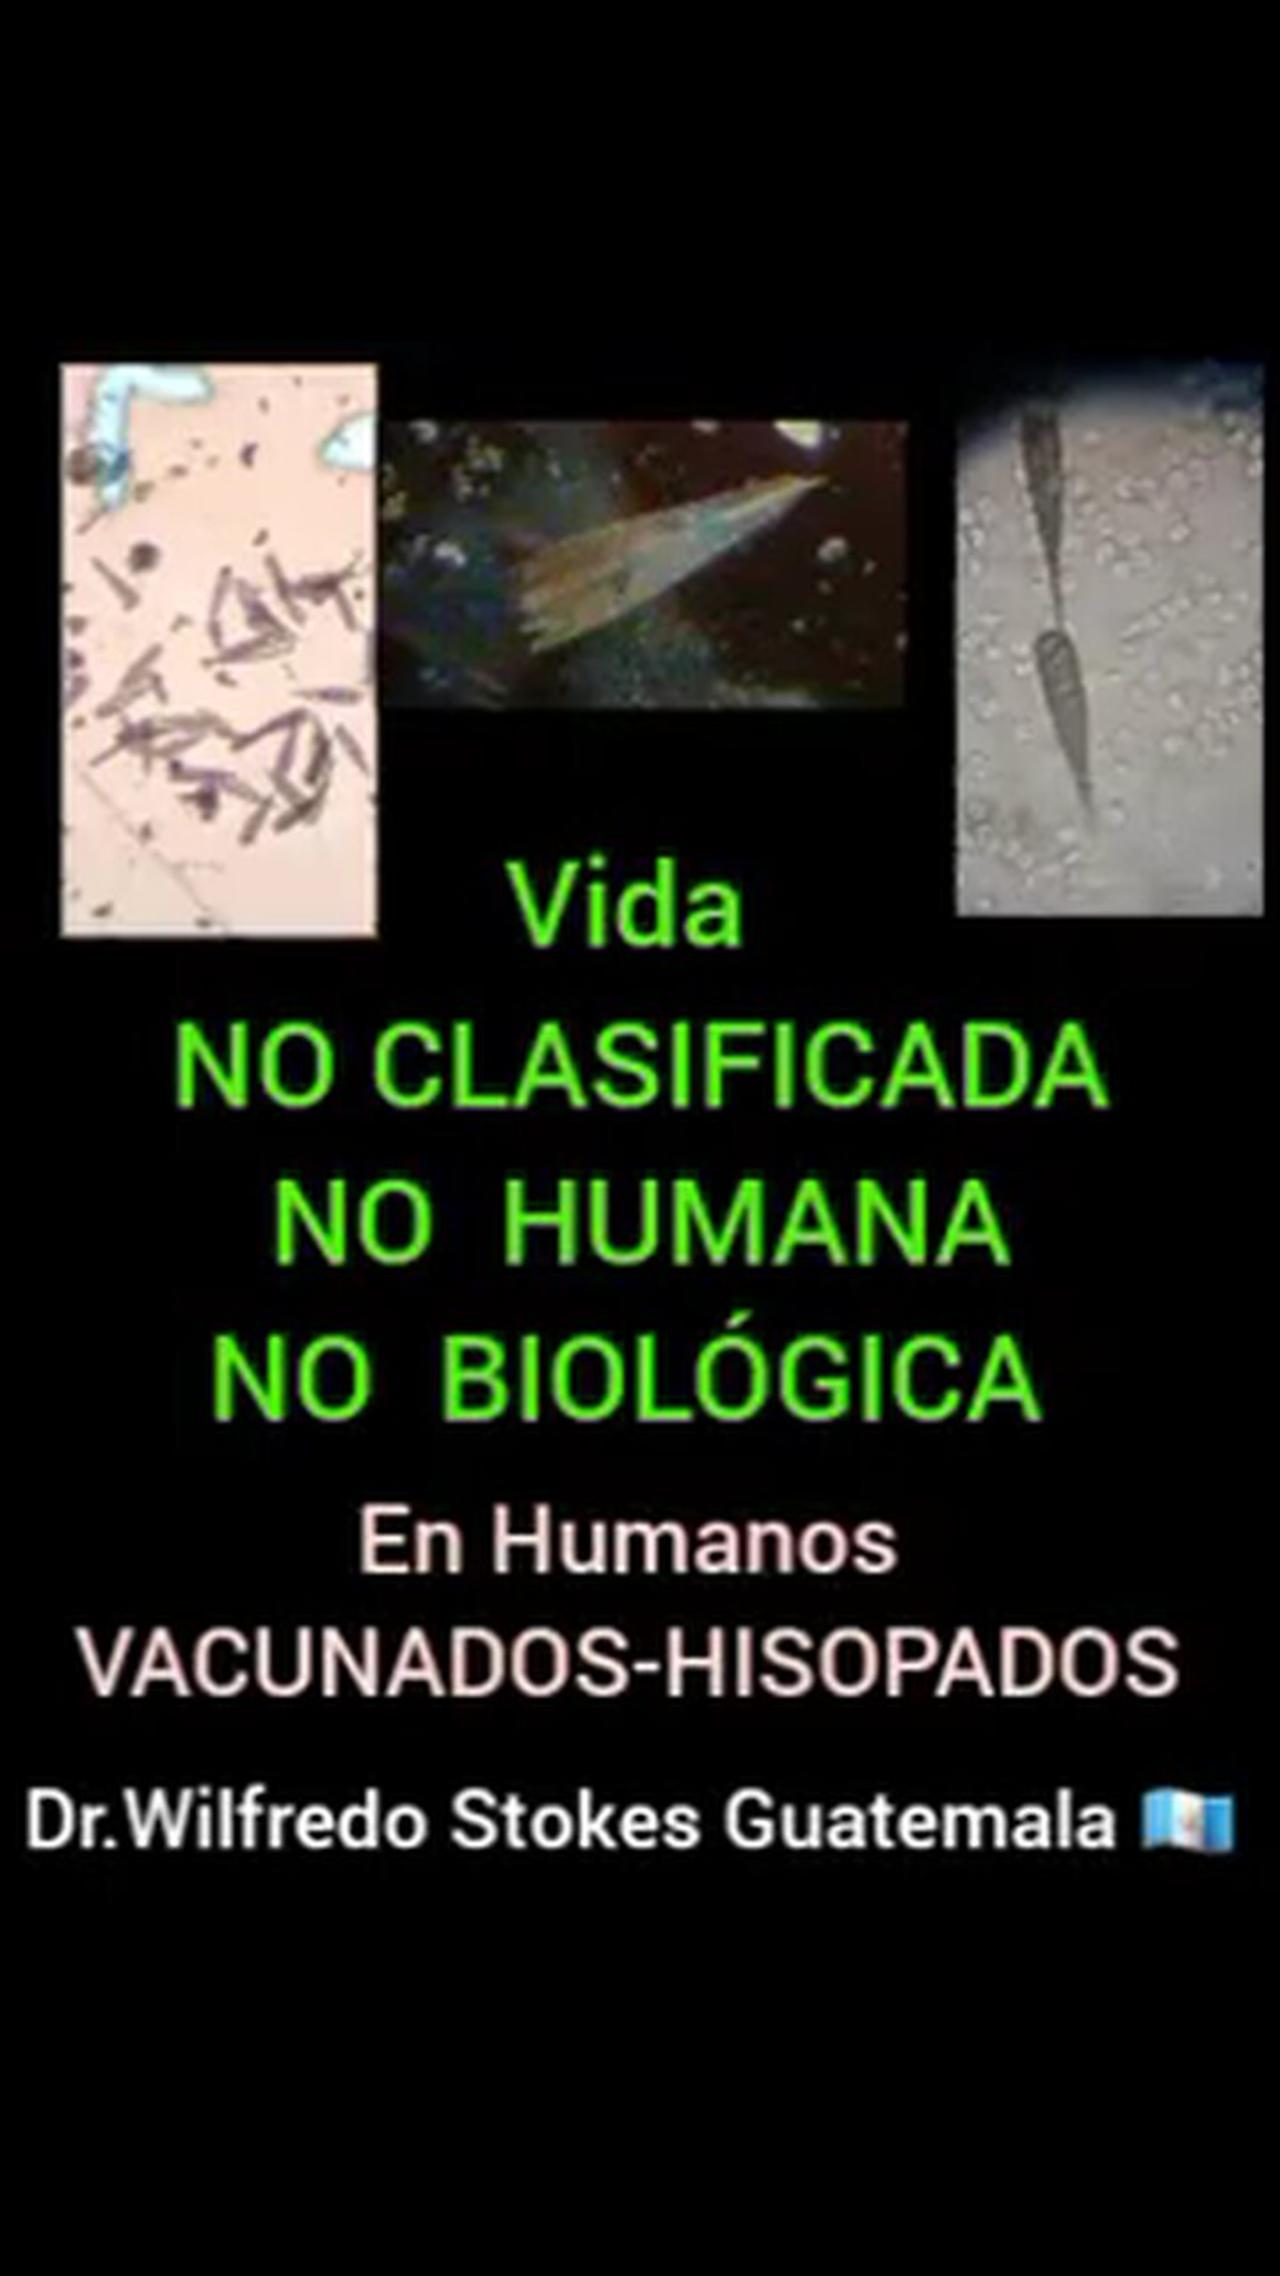 Vida no clasificada no humana no biológica en vacunados e hisopados